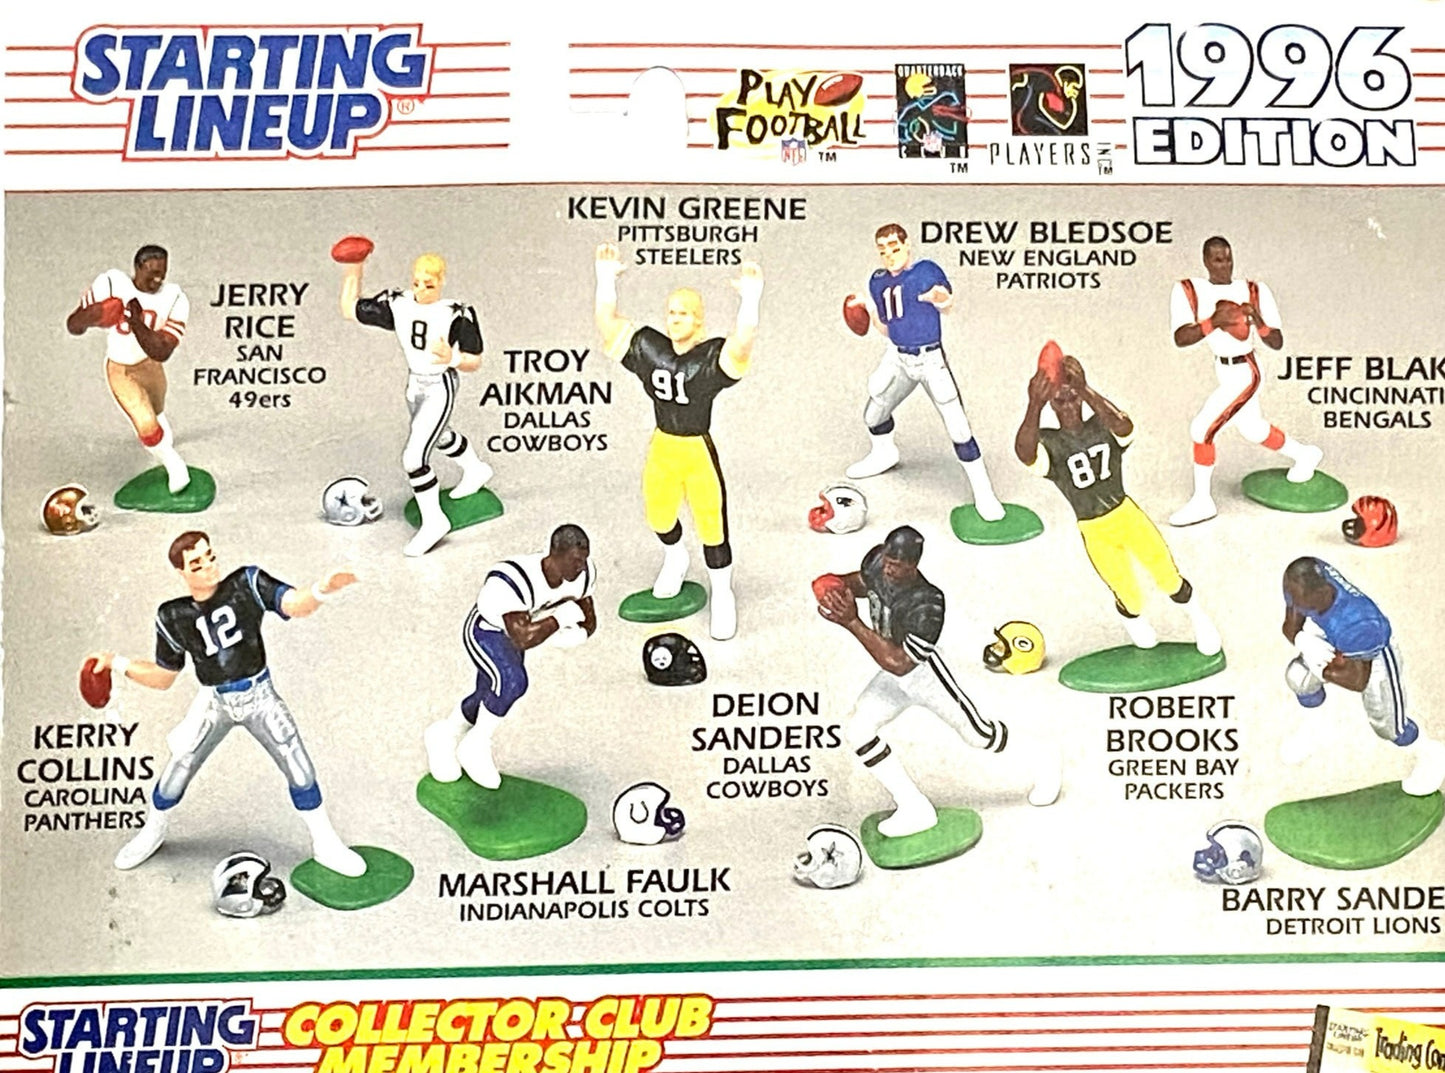 Mark Brunell 1996 Jacksonville Jaguars NFL Starting Lineup Figurine NOS by Kenner